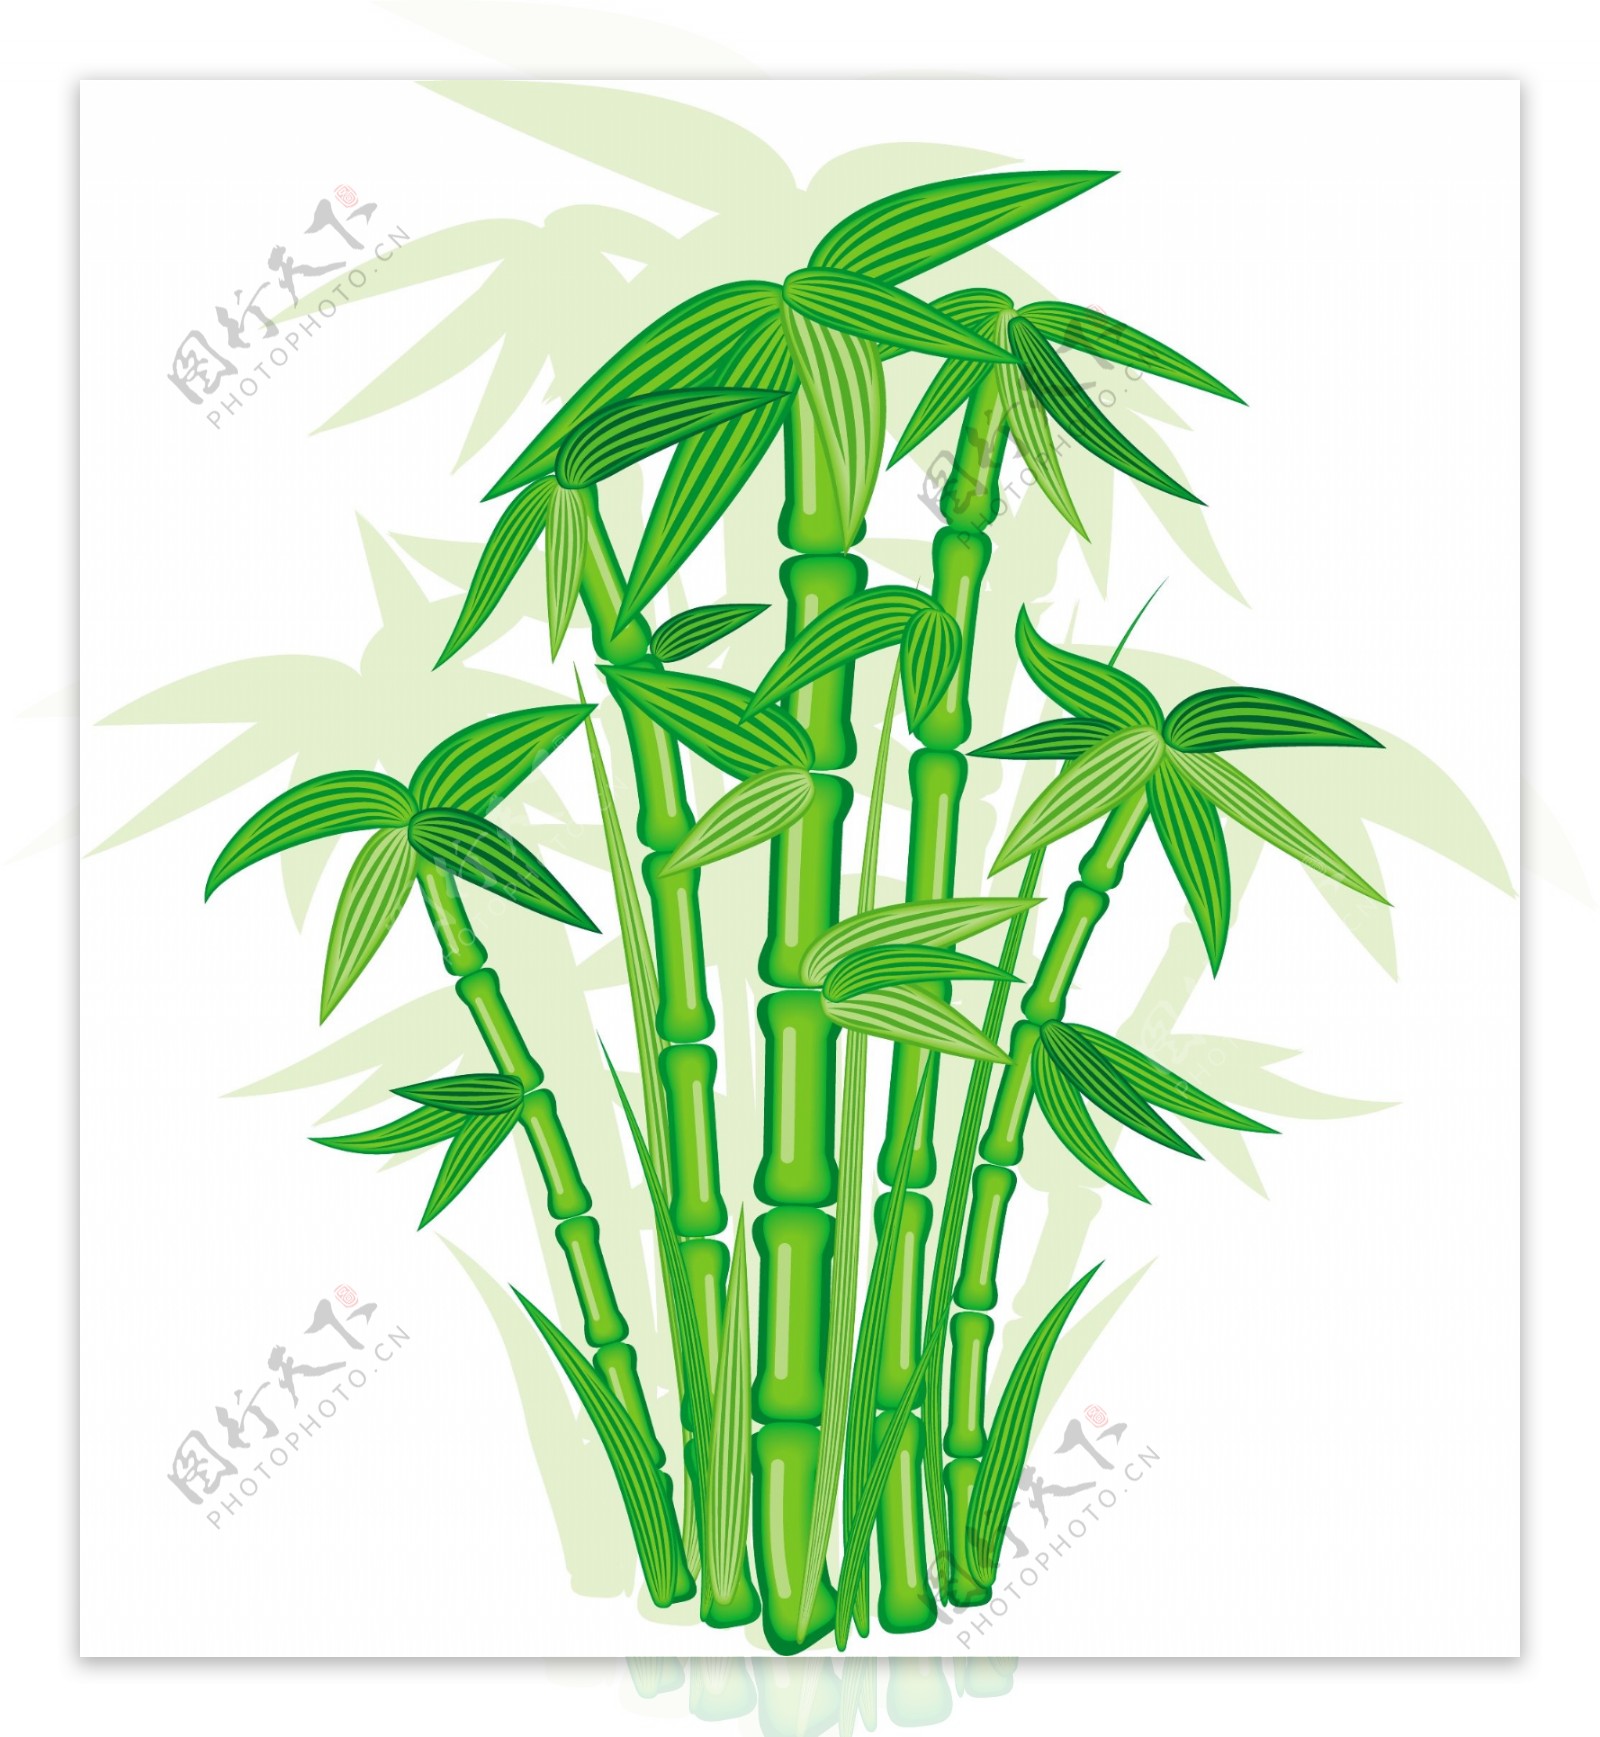 绿色竹子矢量素材